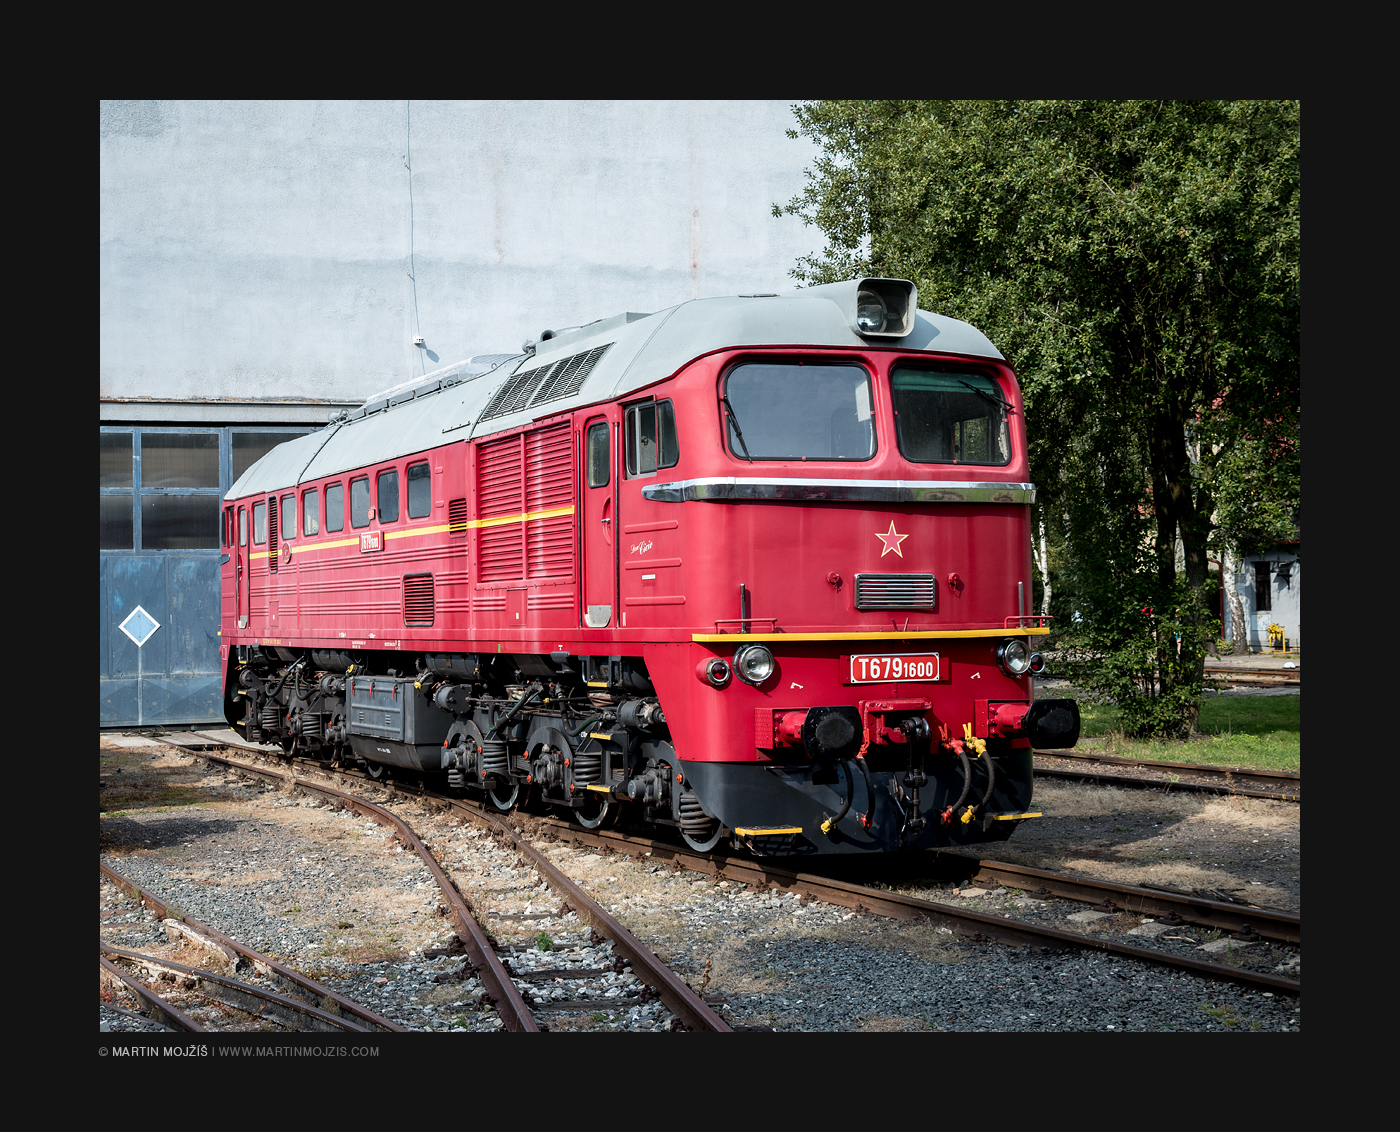 A locomotive T679 1600, called Sergej. Railway muzeum in Luzna near Rakovnik.